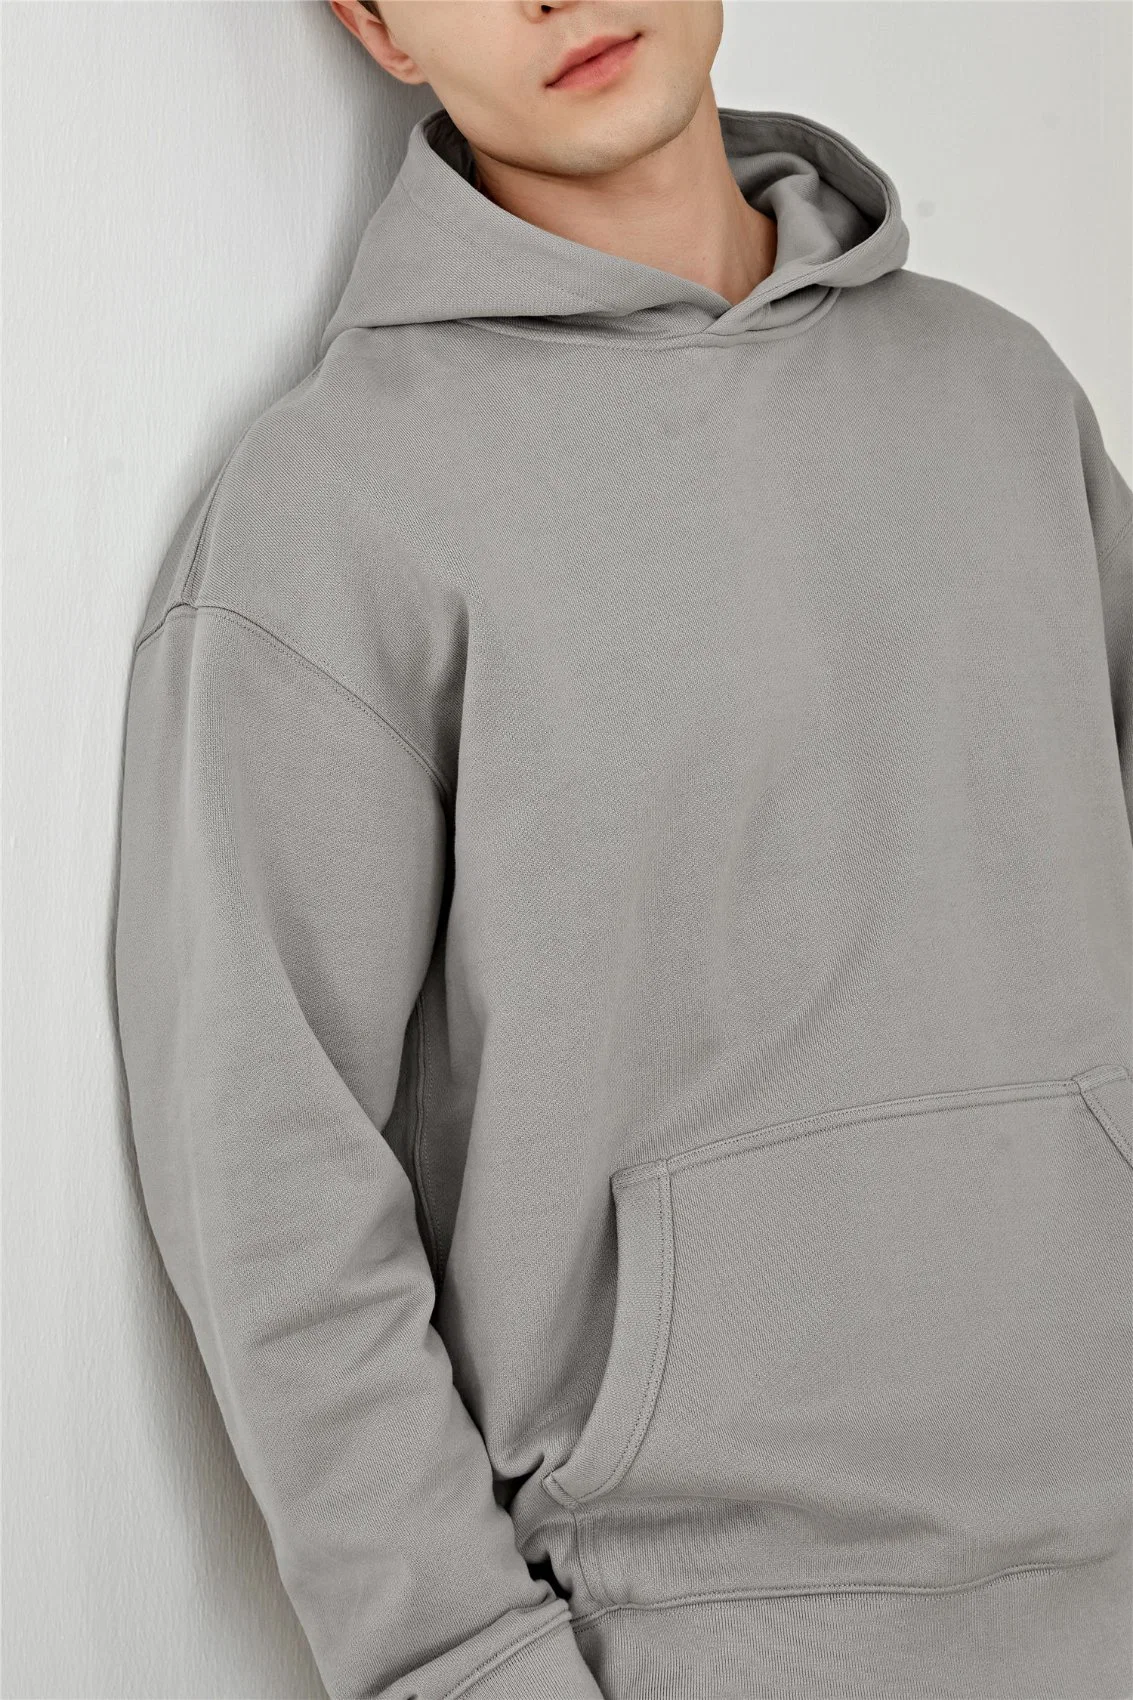 Пуловер с худи для печати логотипа и фирменной печати FACTORY Outlet Suit Sweater Однородная рабочая одежда класса